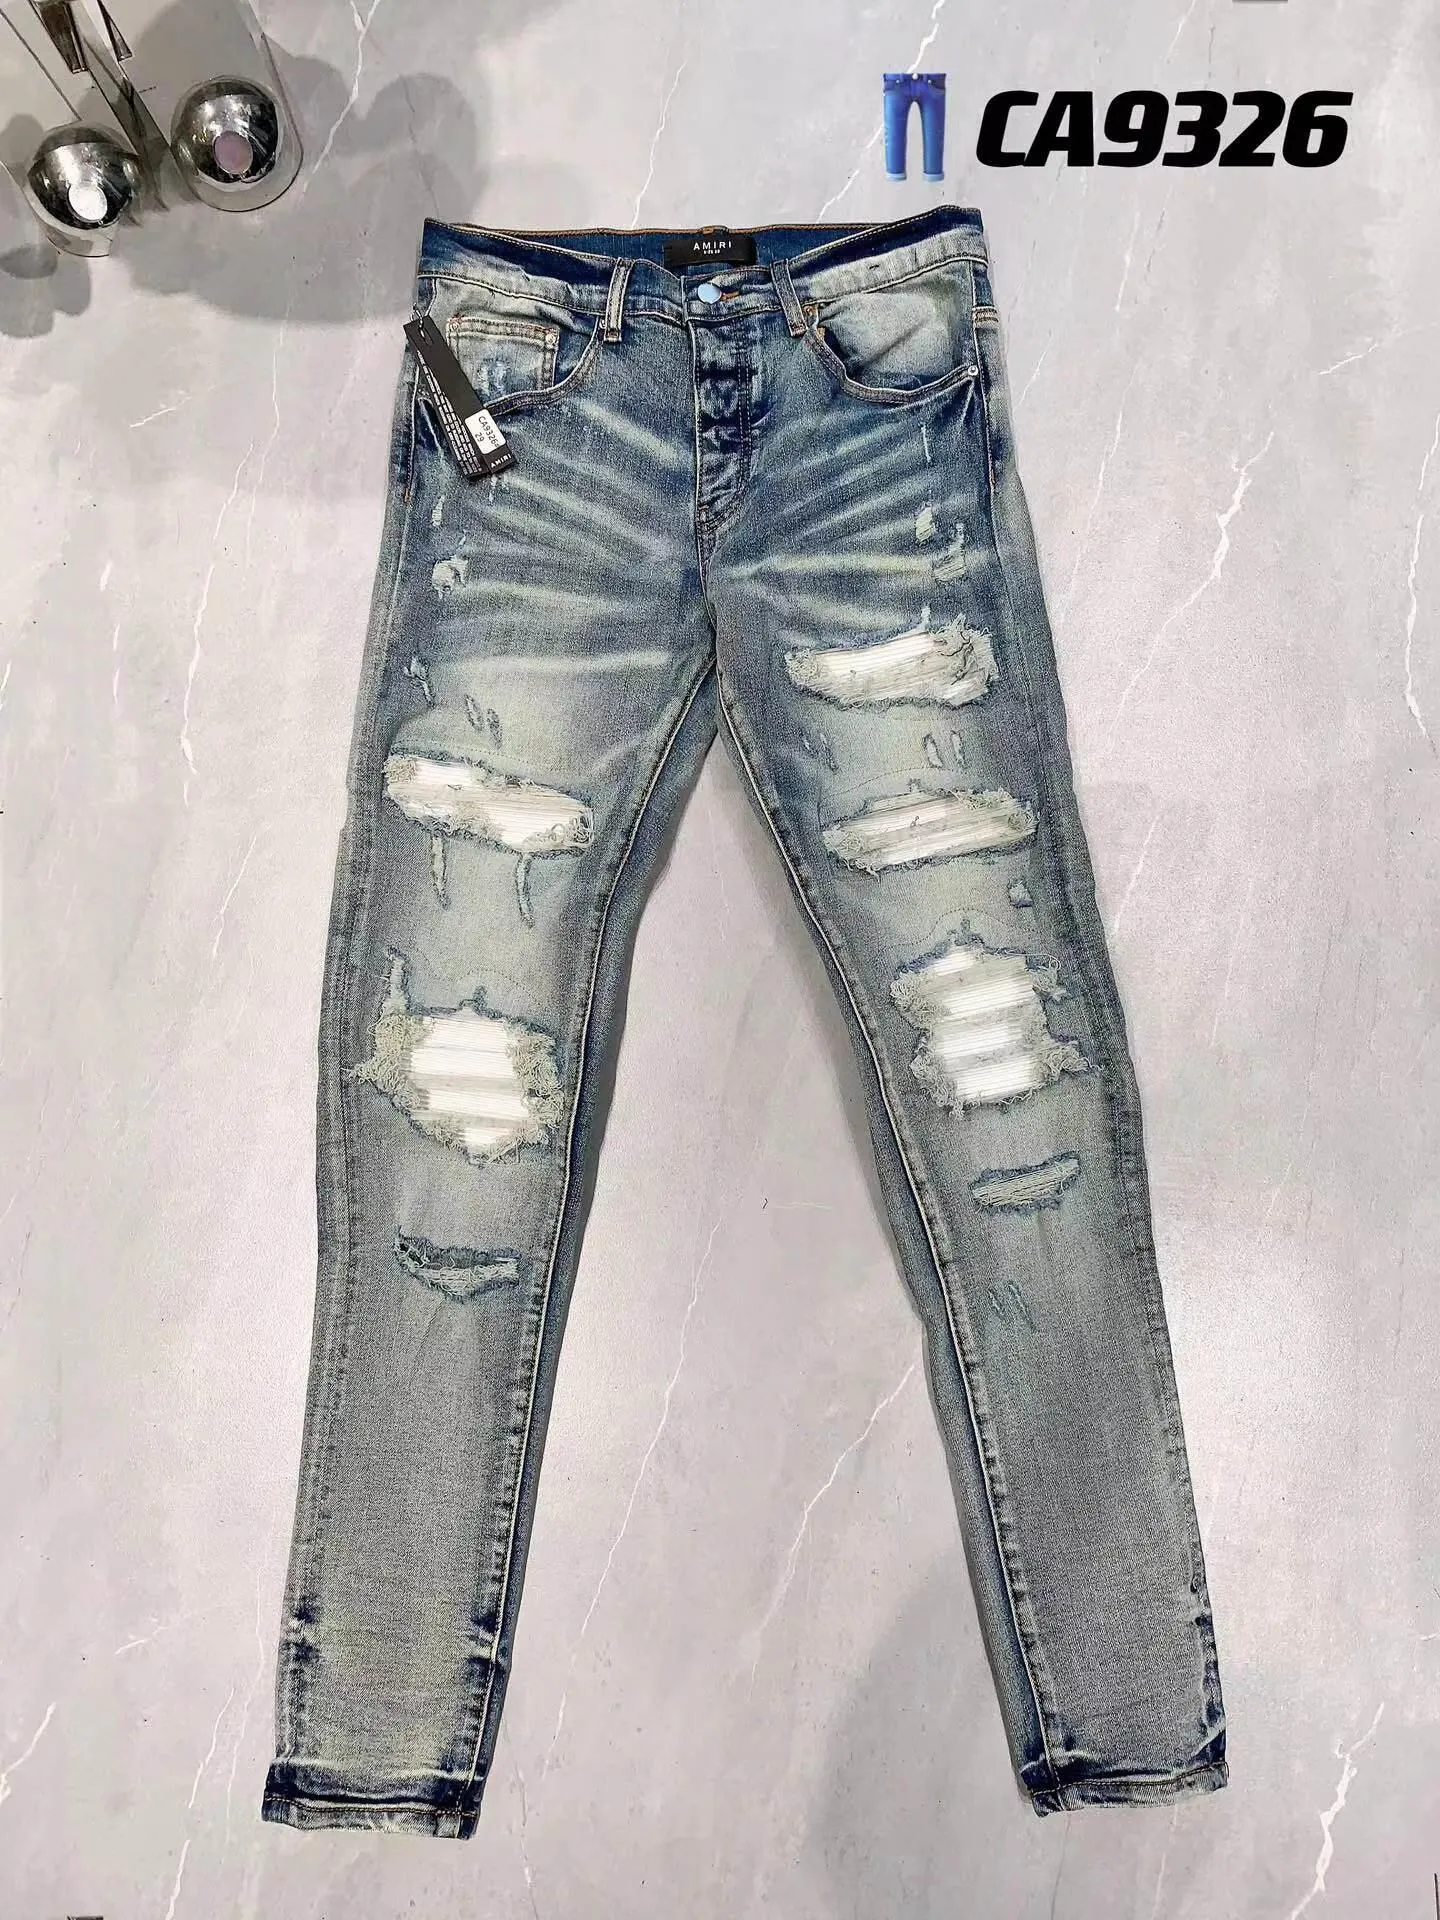 Jeans Hommes Violet Jeans Designer Jeans Mode Cool Slim Fit Moto Style Pantalon Denim Pantalon En Détresse Ripped Biker Broderie Patch 926